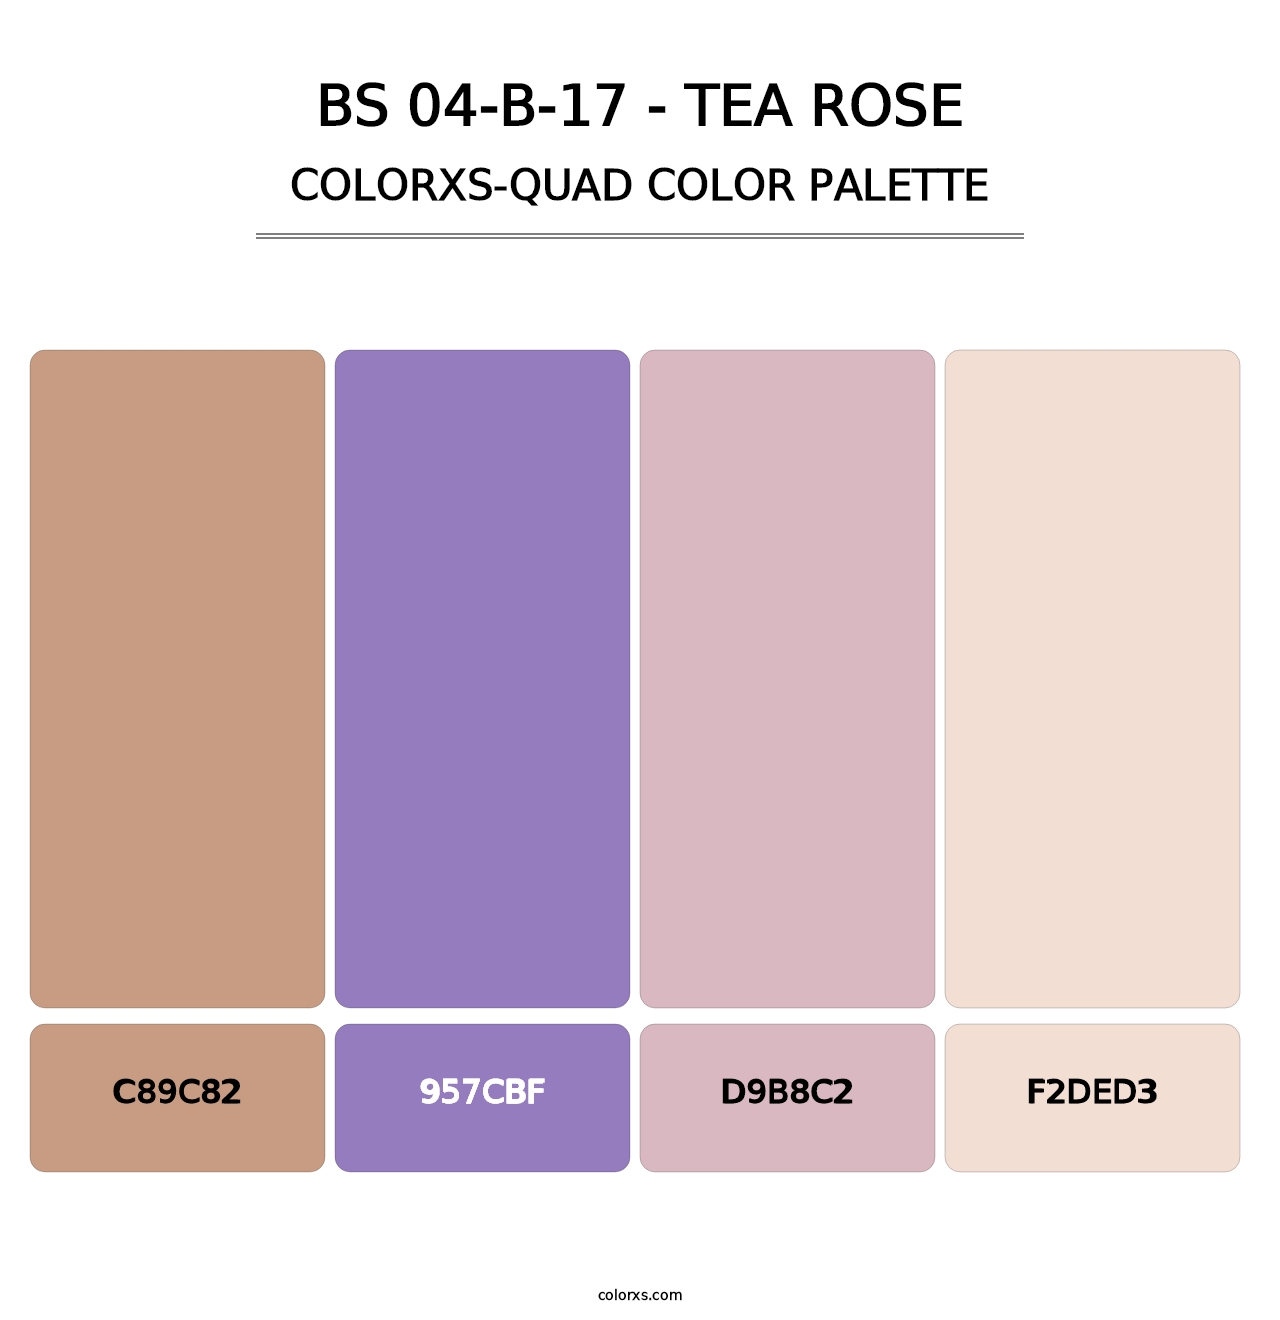 BS 04-B-17 - Tea Rose - Colorxs Quad Palette